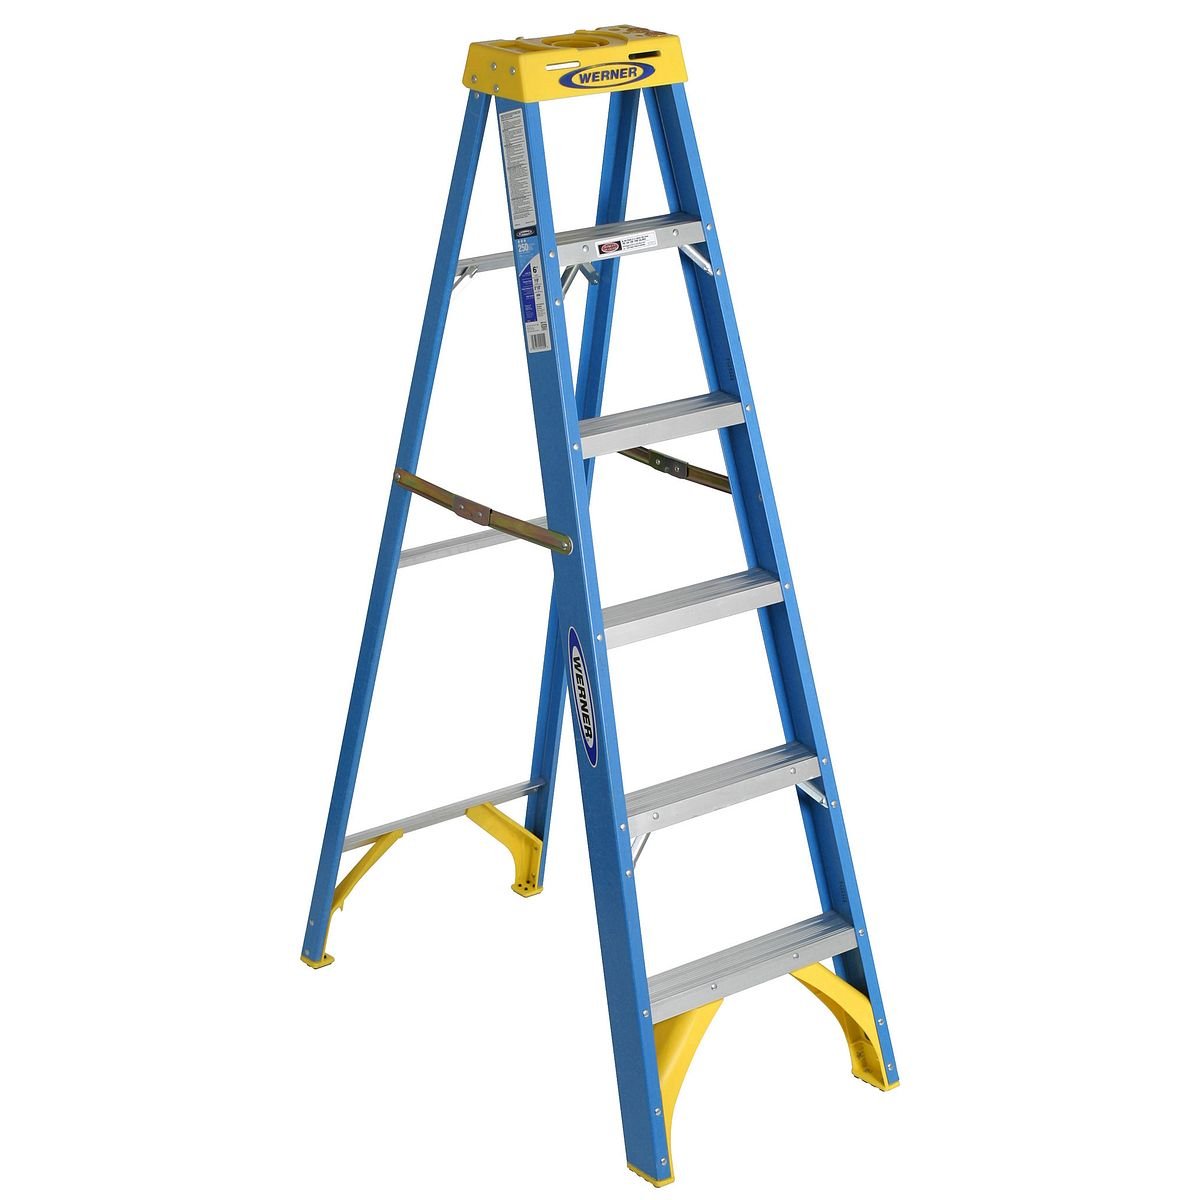 Distributor of Werner 6006 6 ft. Fiberglass Step Ladder in UAE